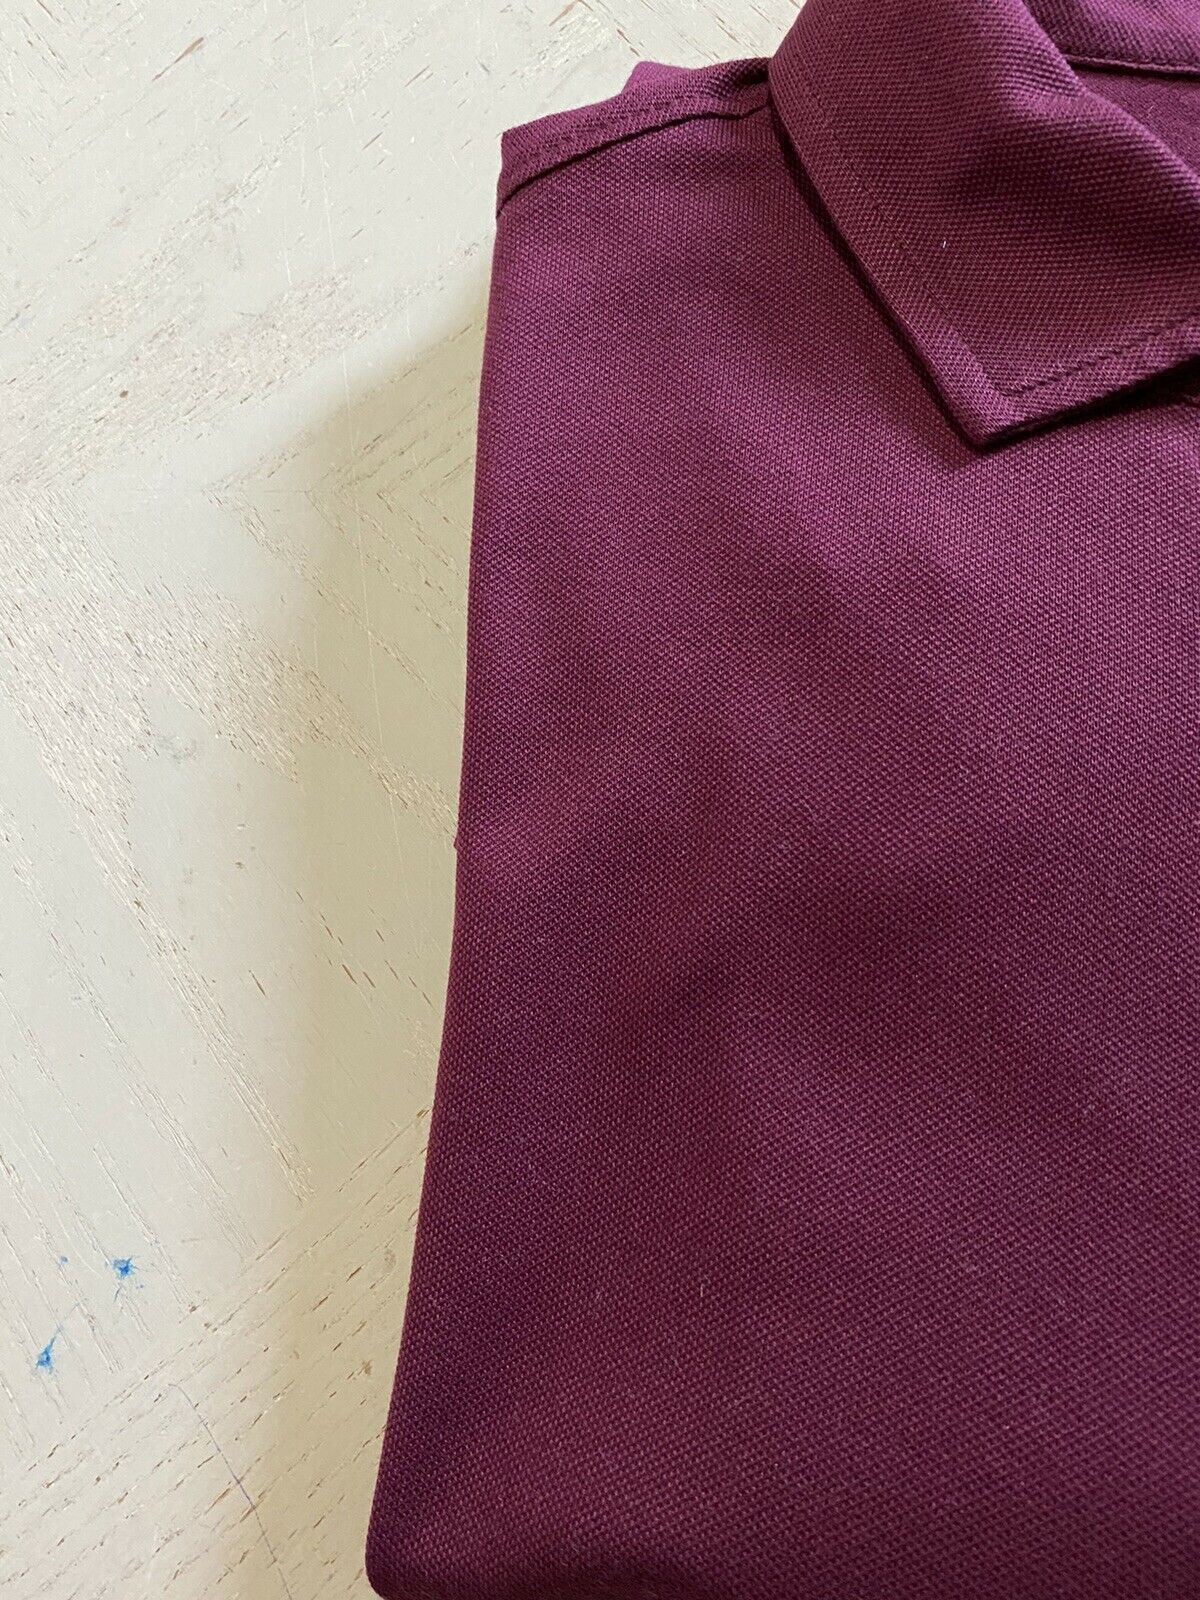 Мужская рубашка поло с длинным рукавом NWT Polo Ralph Lauren бордового размера XL